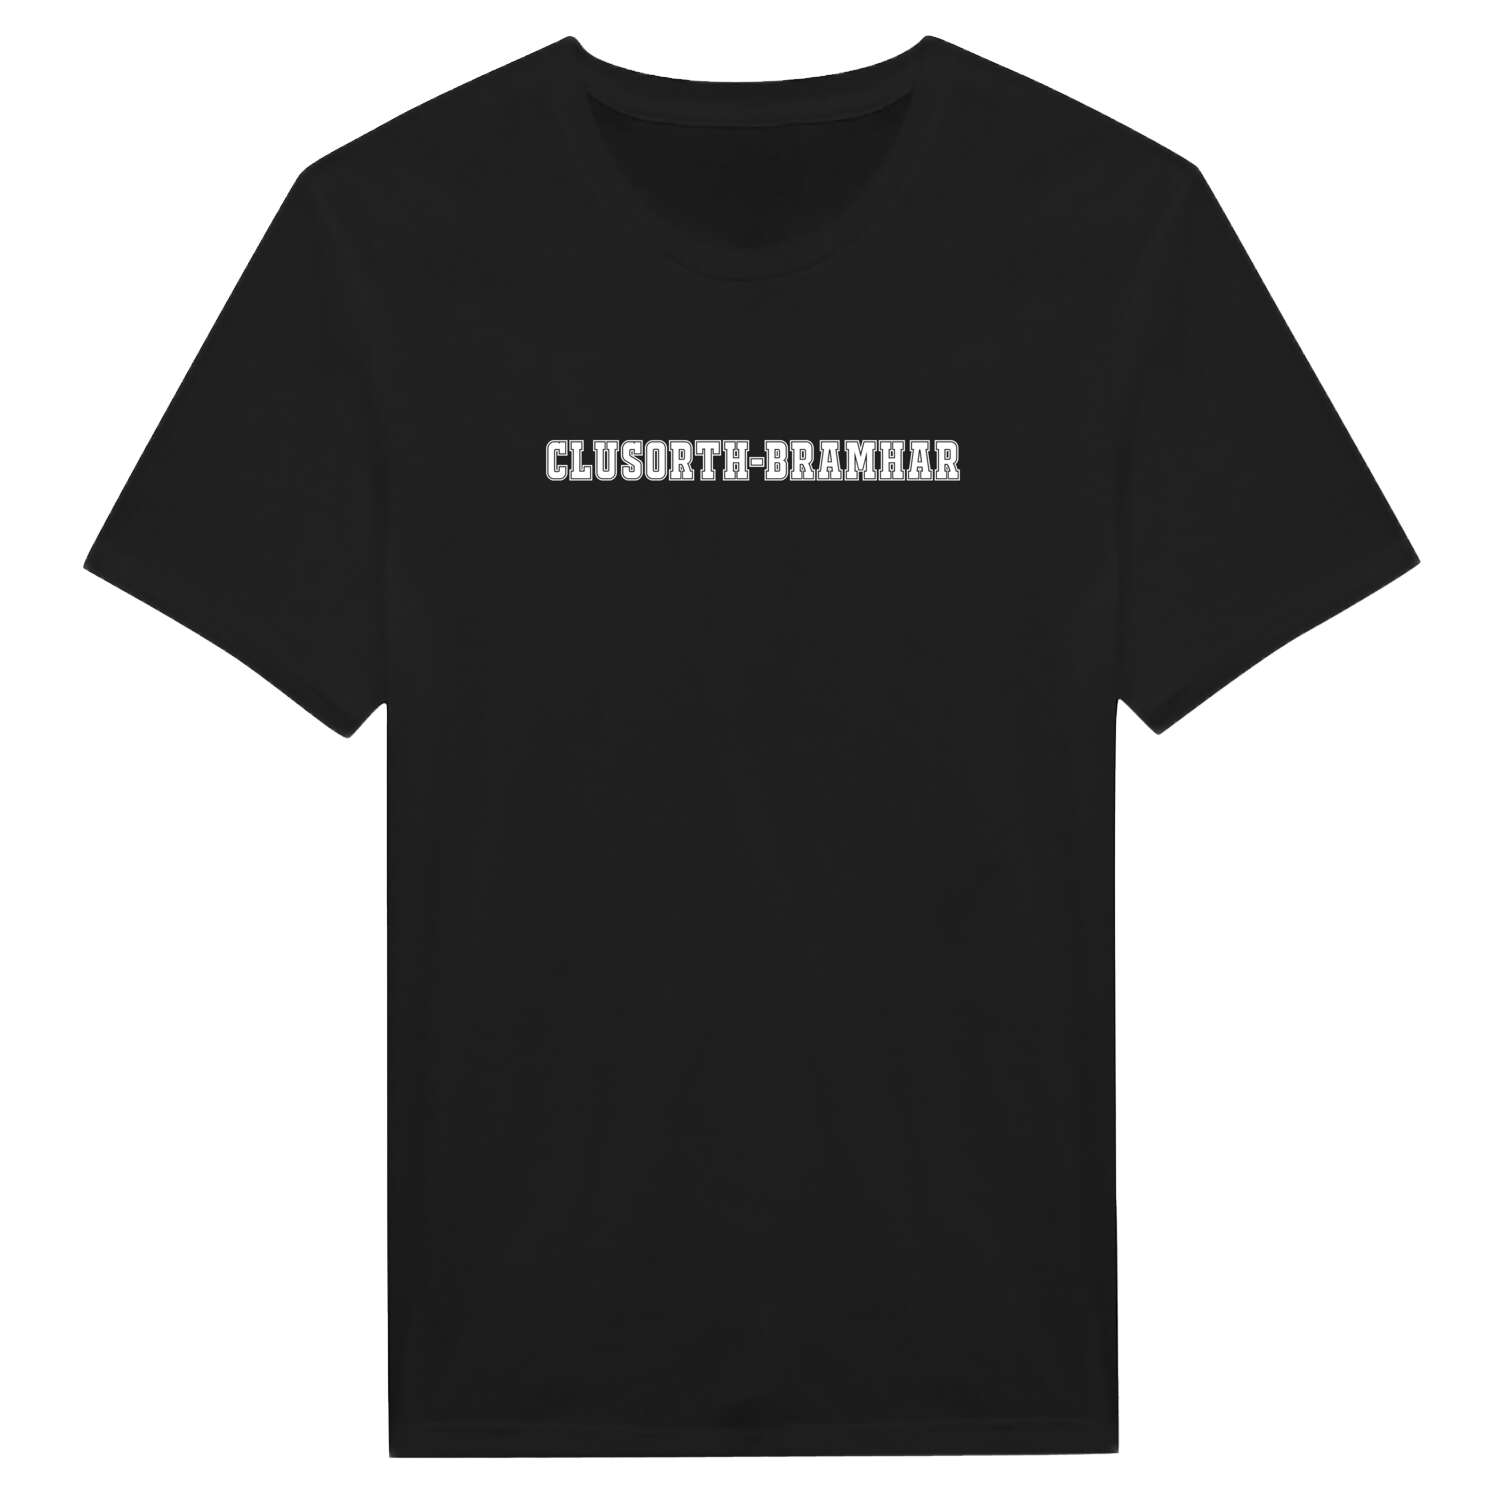 Clusorth-Bramhar T-Shirt »Classic«